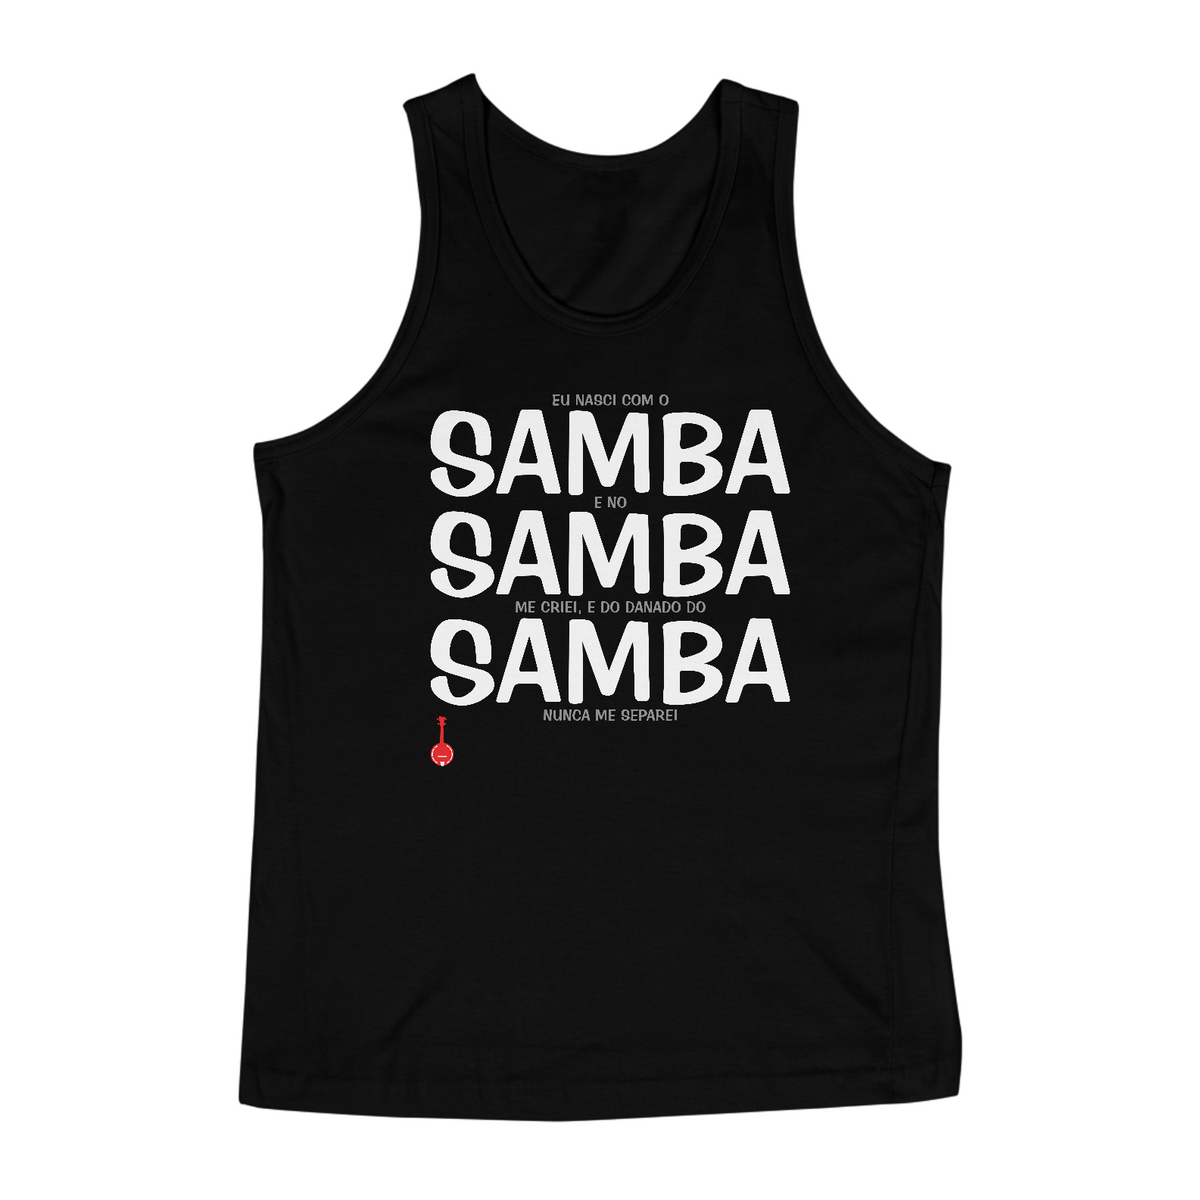 Nome do produto: Camiseta Regata Eu Nasci com o Samba e no Samba me Criei - Preta